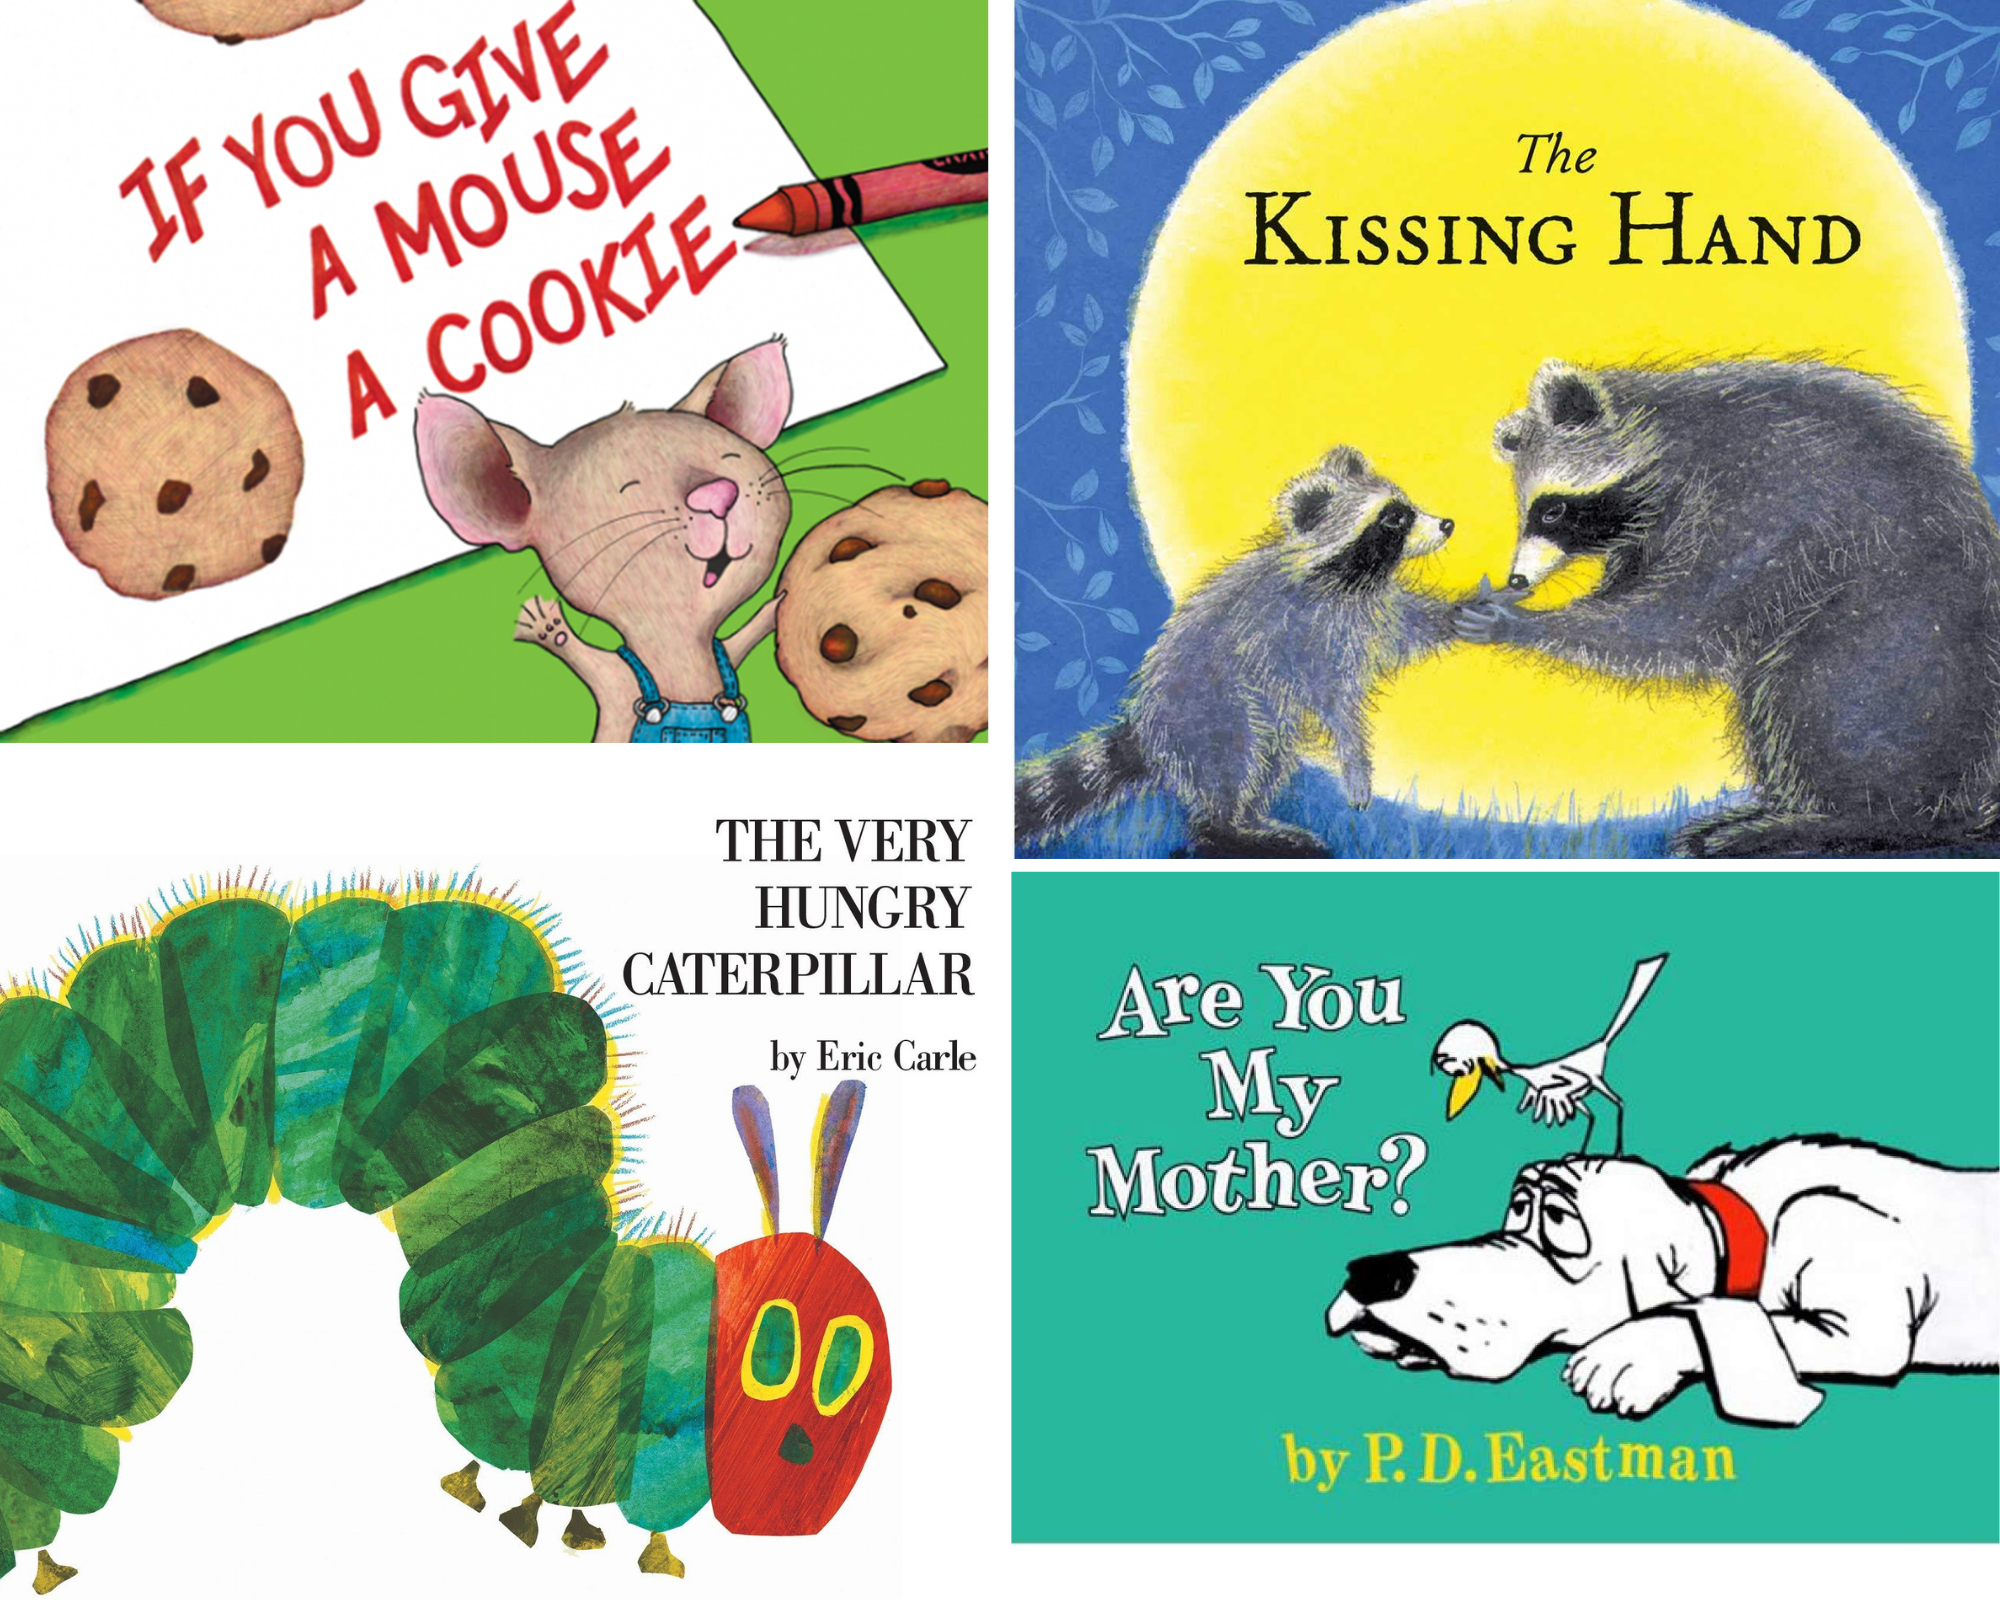 Top những cuốn sách song ngữ giúp bé học tiếng Anh hiệu quả mà bố mẹ không nên bỏ qua